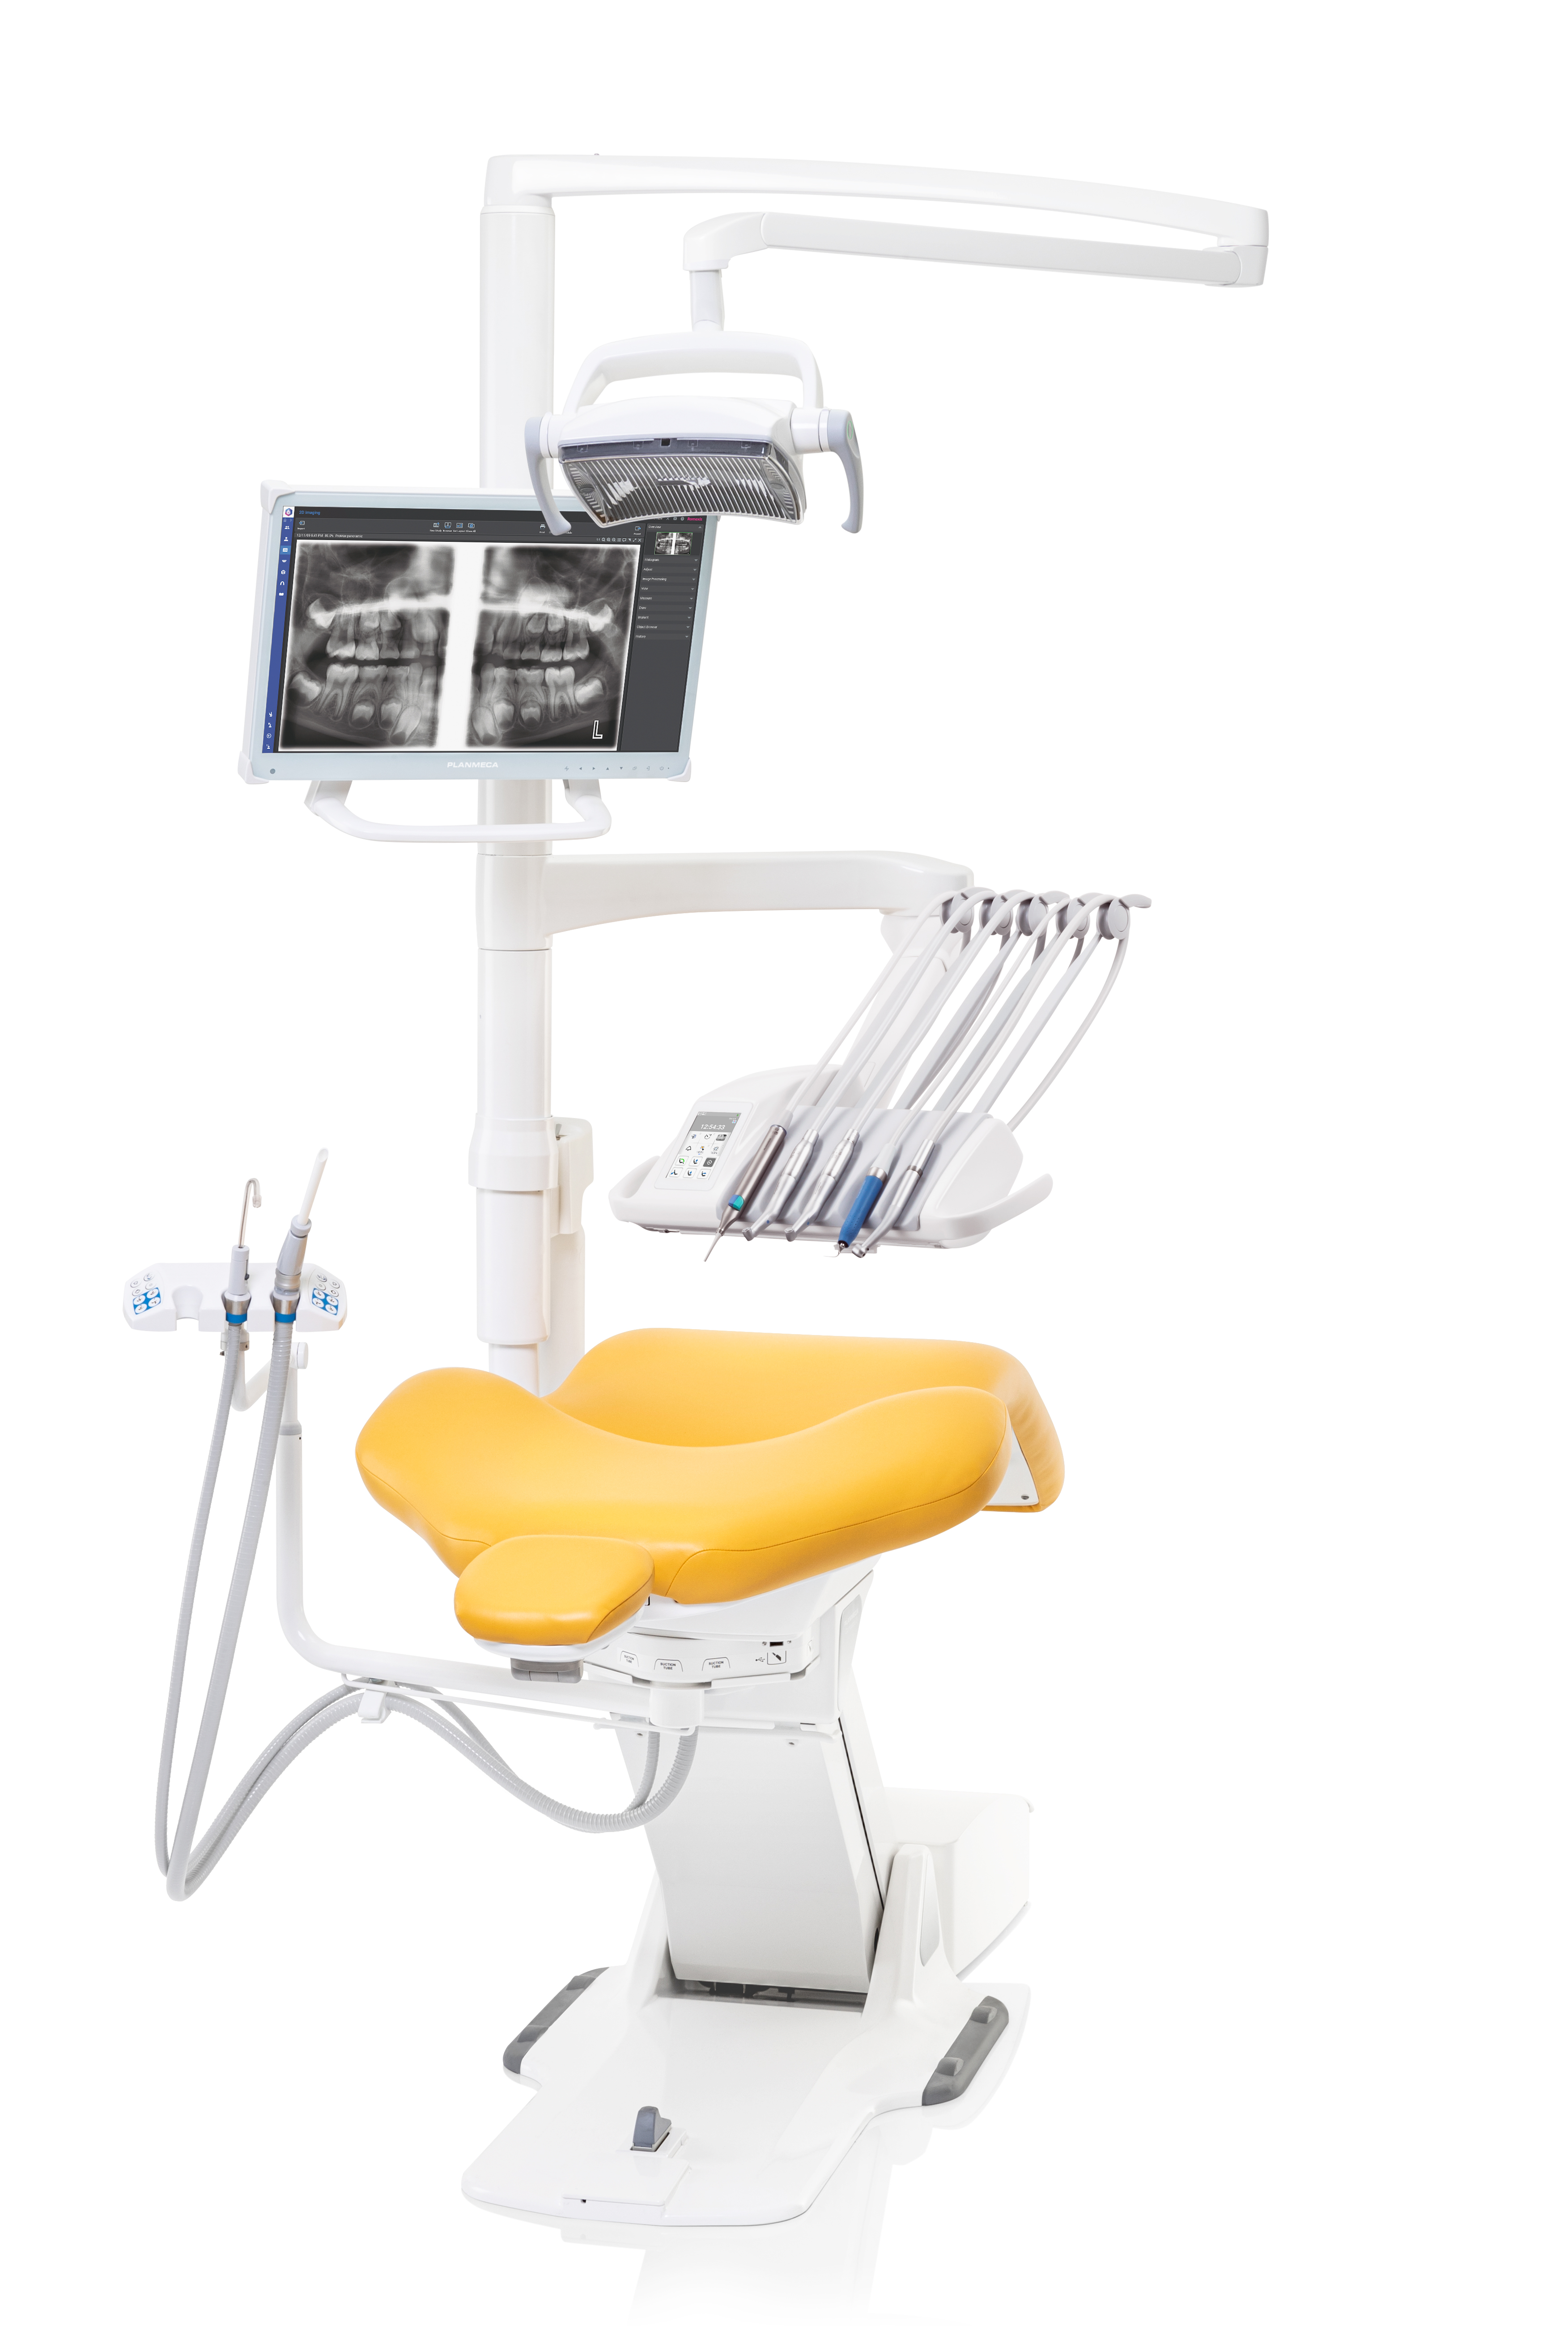 Новая стоматологическая установка Planmeca предлагает гибкие функциональные возможности для каждого стоматолога